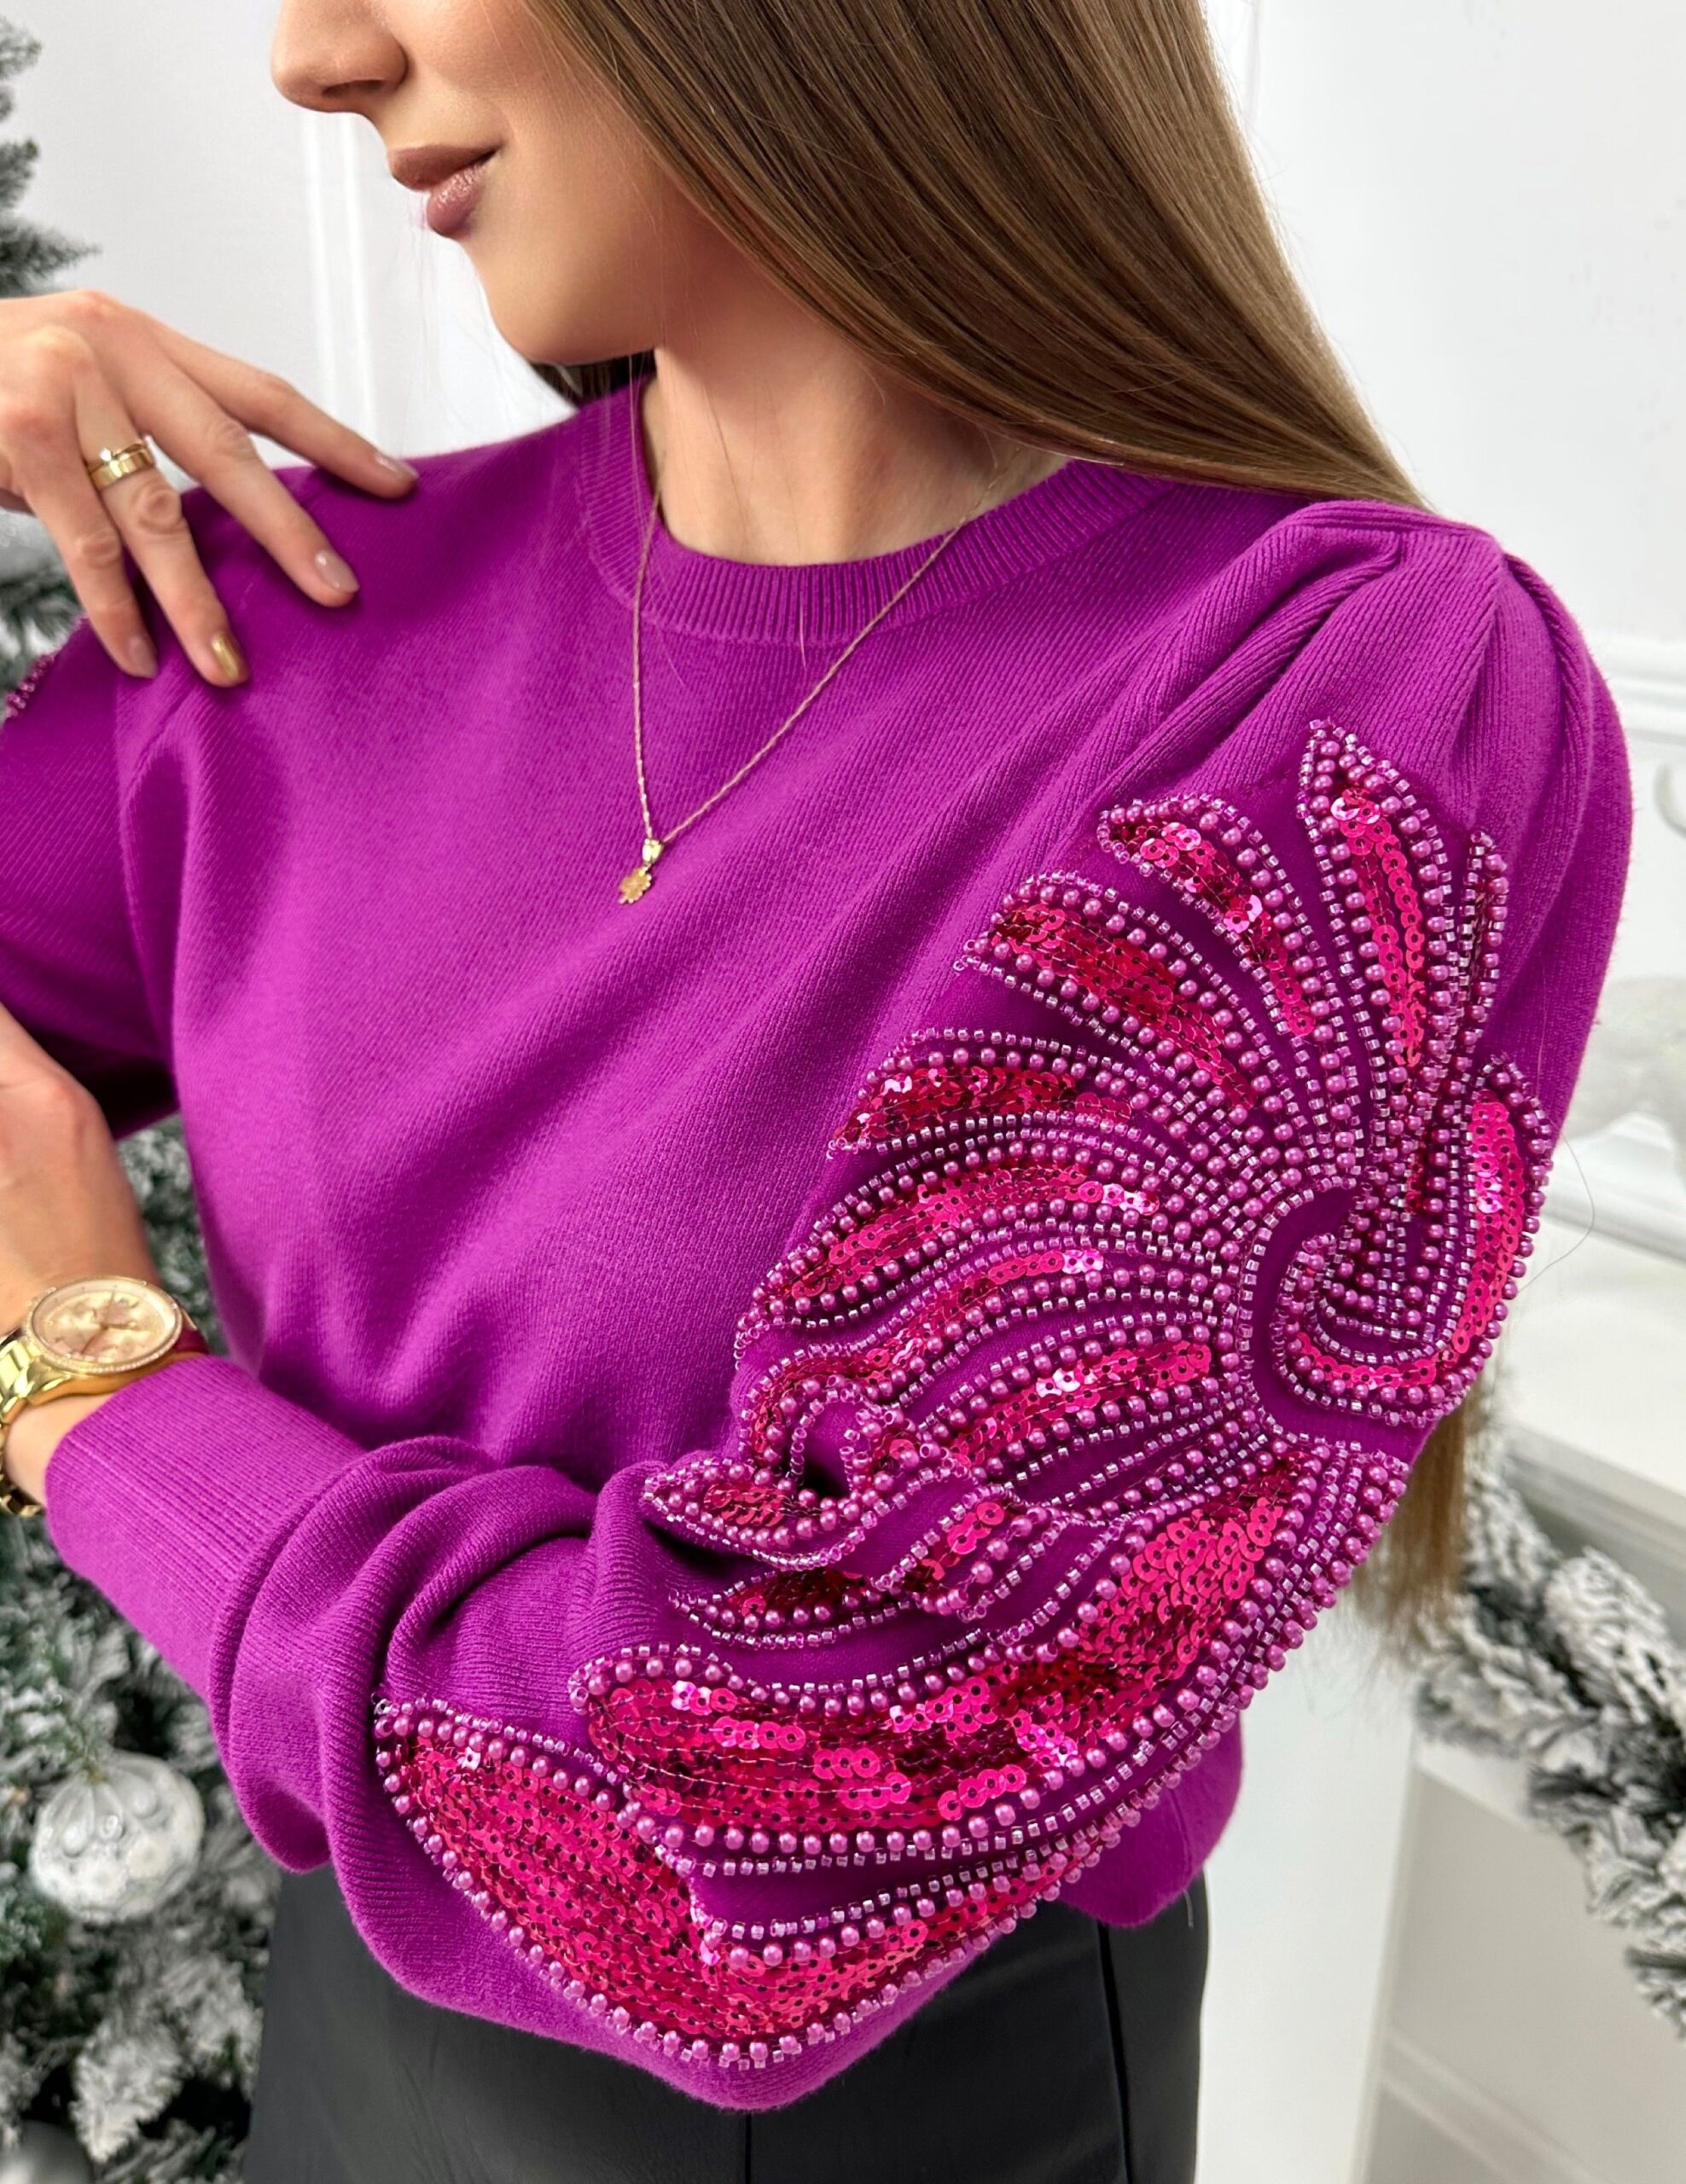 Sweterek Elegant sparkle – śliwka